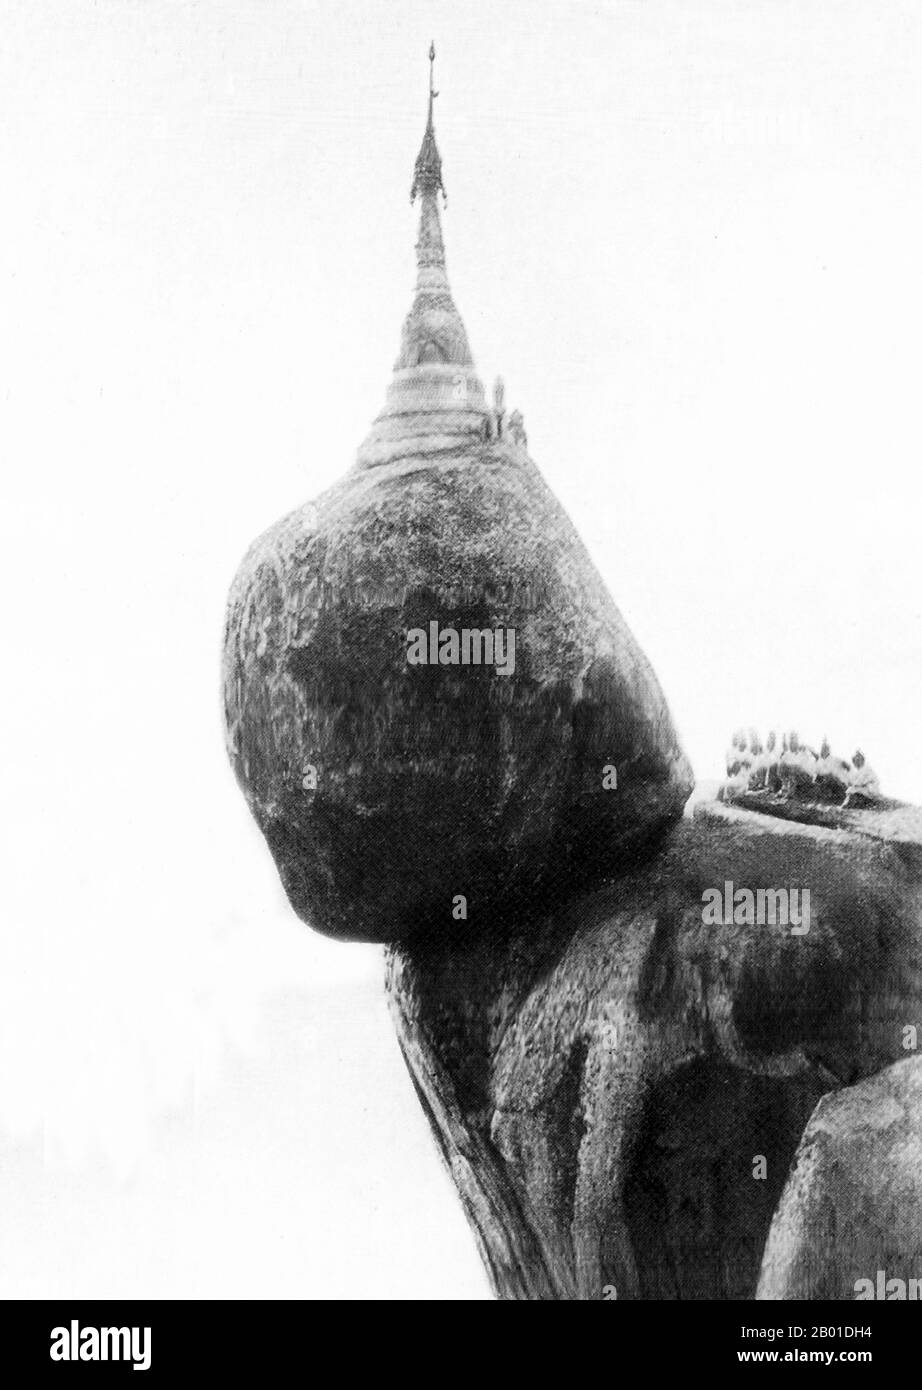 Birmanie : Pagode Kyaiktiyo, c. 1892-1896. La Pagode Kyaiktiyo (également connue sous le nom de Golden Rock) est un lieu de pèlerinage bouddhiste bien connu dans l'État de mon, dans l'est de la Birmanie. C'est une petite pagode (7,3 mètres (24 pi)) construite sur le dessus d'un bloc de granit recouvert de feuilles d'or collées par des dévotés. Selon la légende, le Rocher d'Or lui-même est perché sur un brin de cheveux du Bouddha. Le rocher semble défier la gravité, car il semble toujours être sur le point de descendre la colline. Banque D'Images